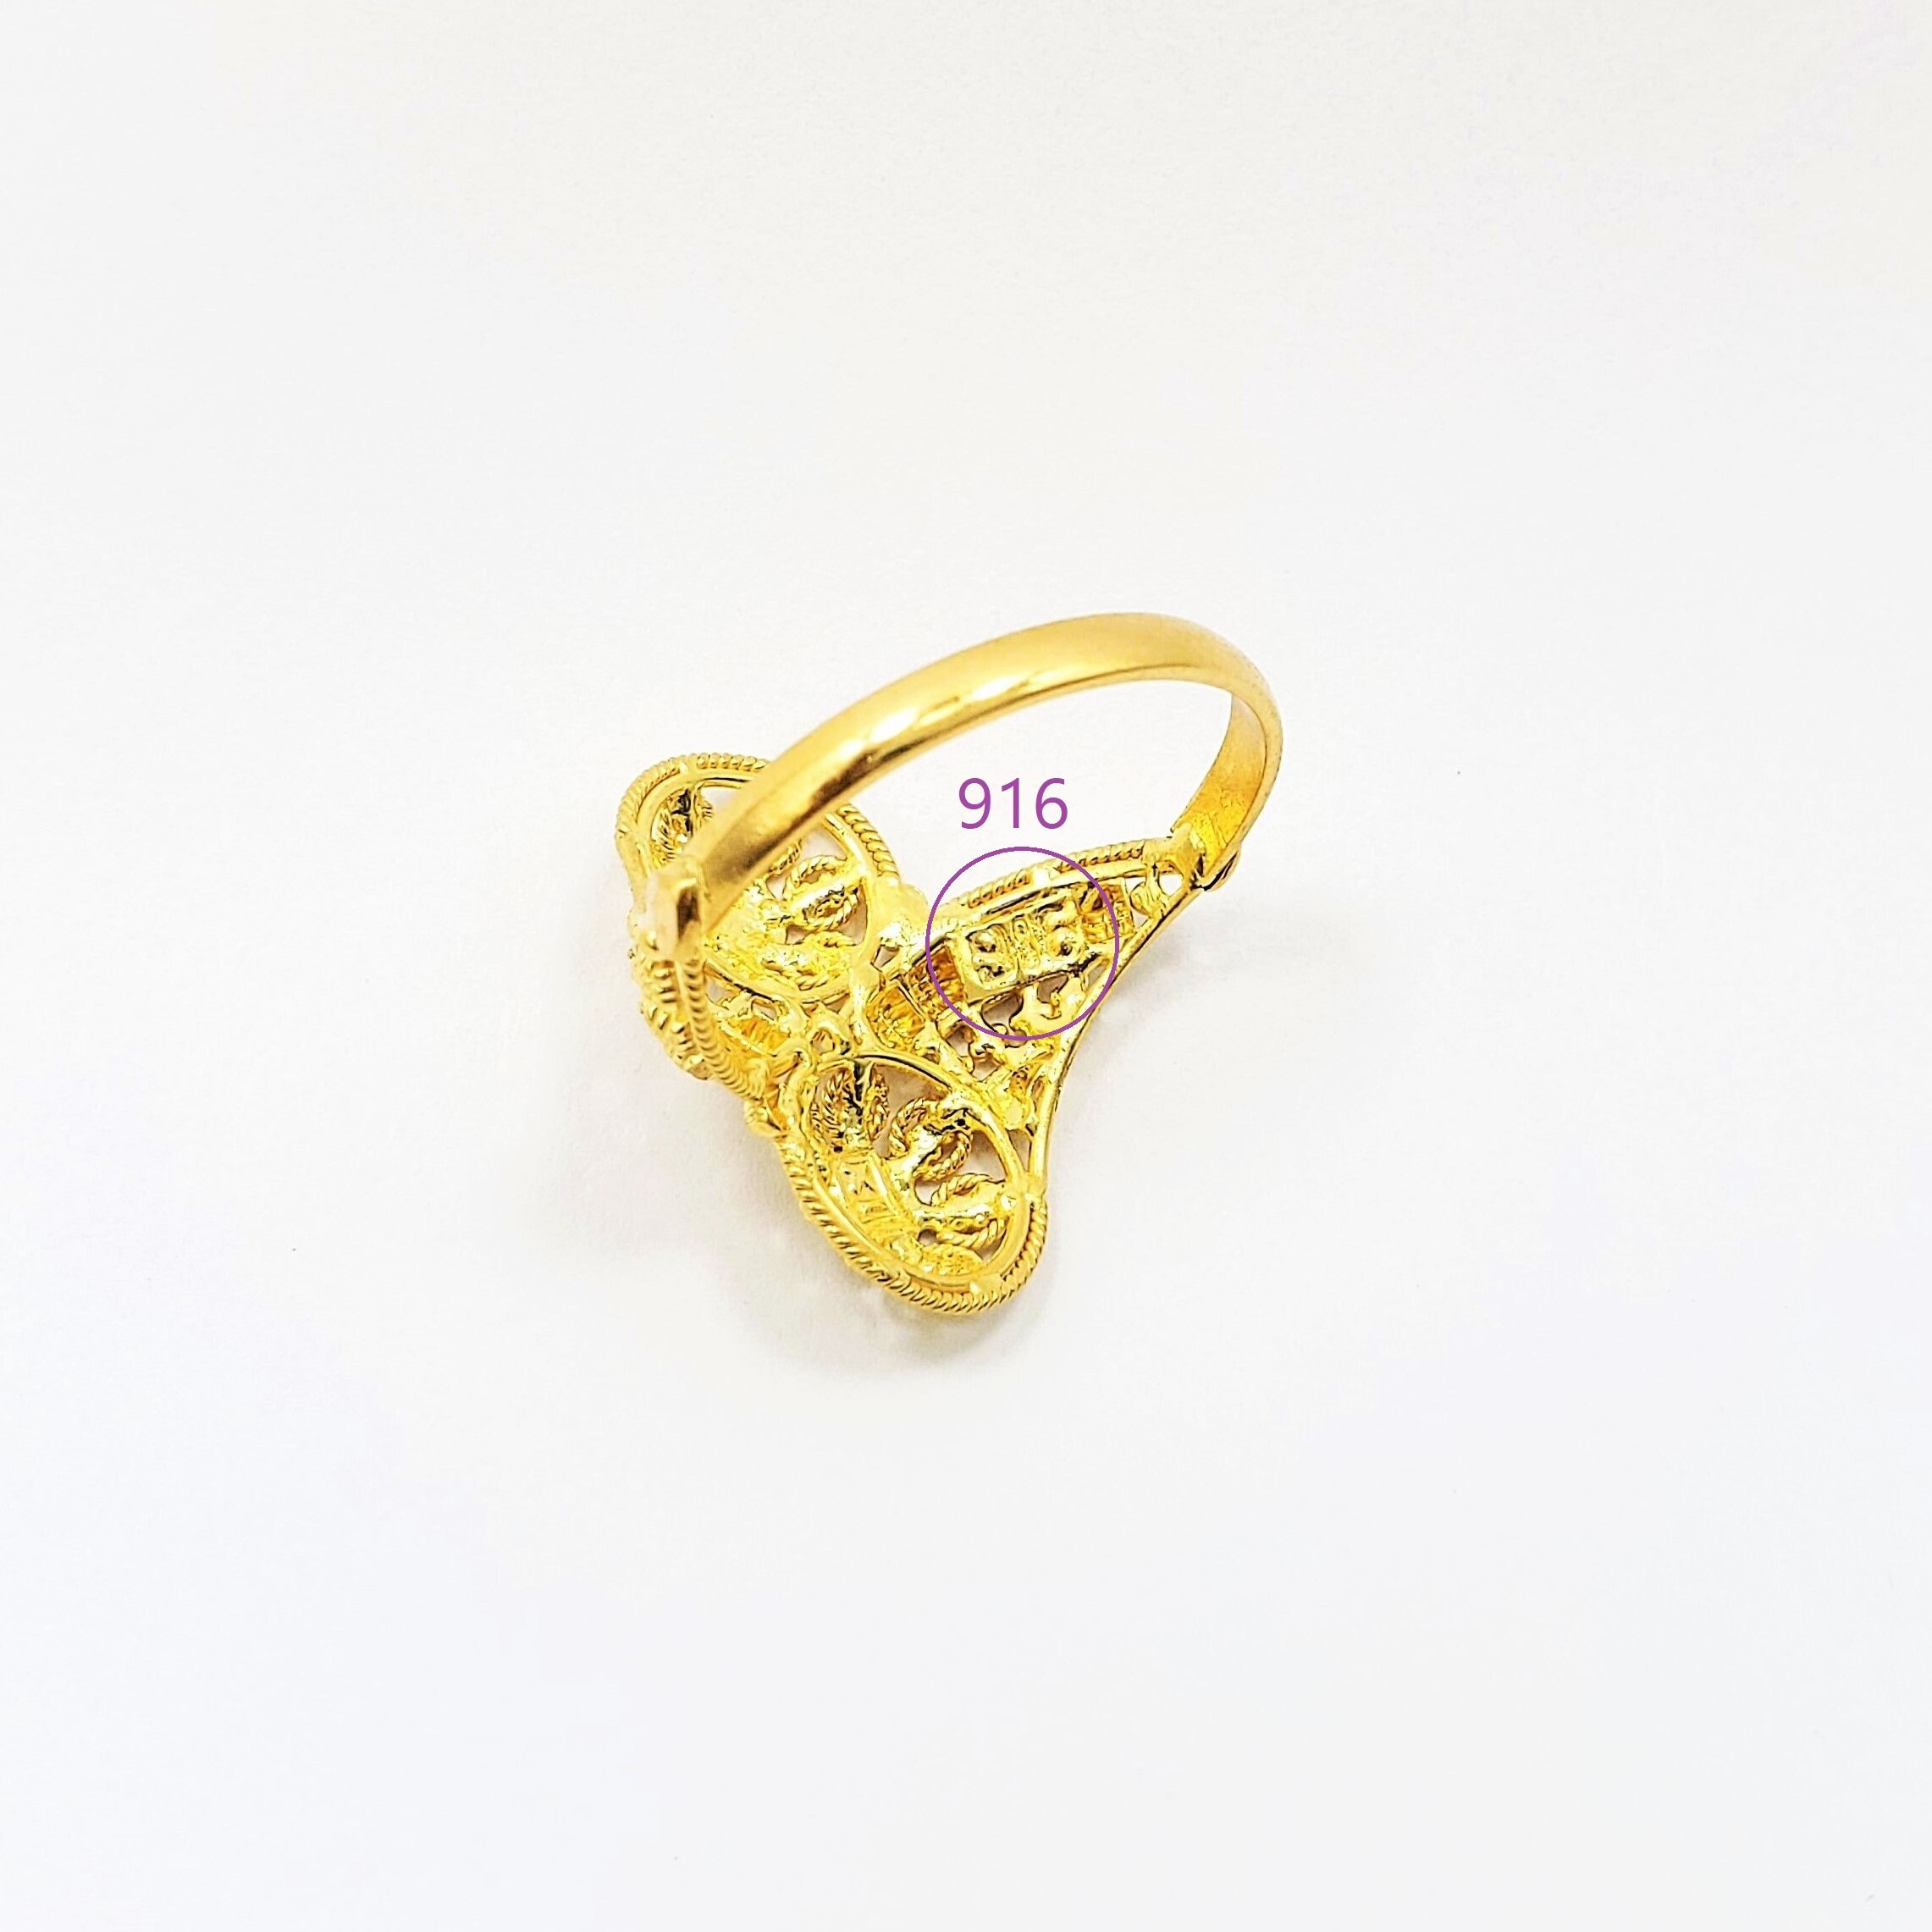 Buy quality 916 hallmark gold ring in Mumbai